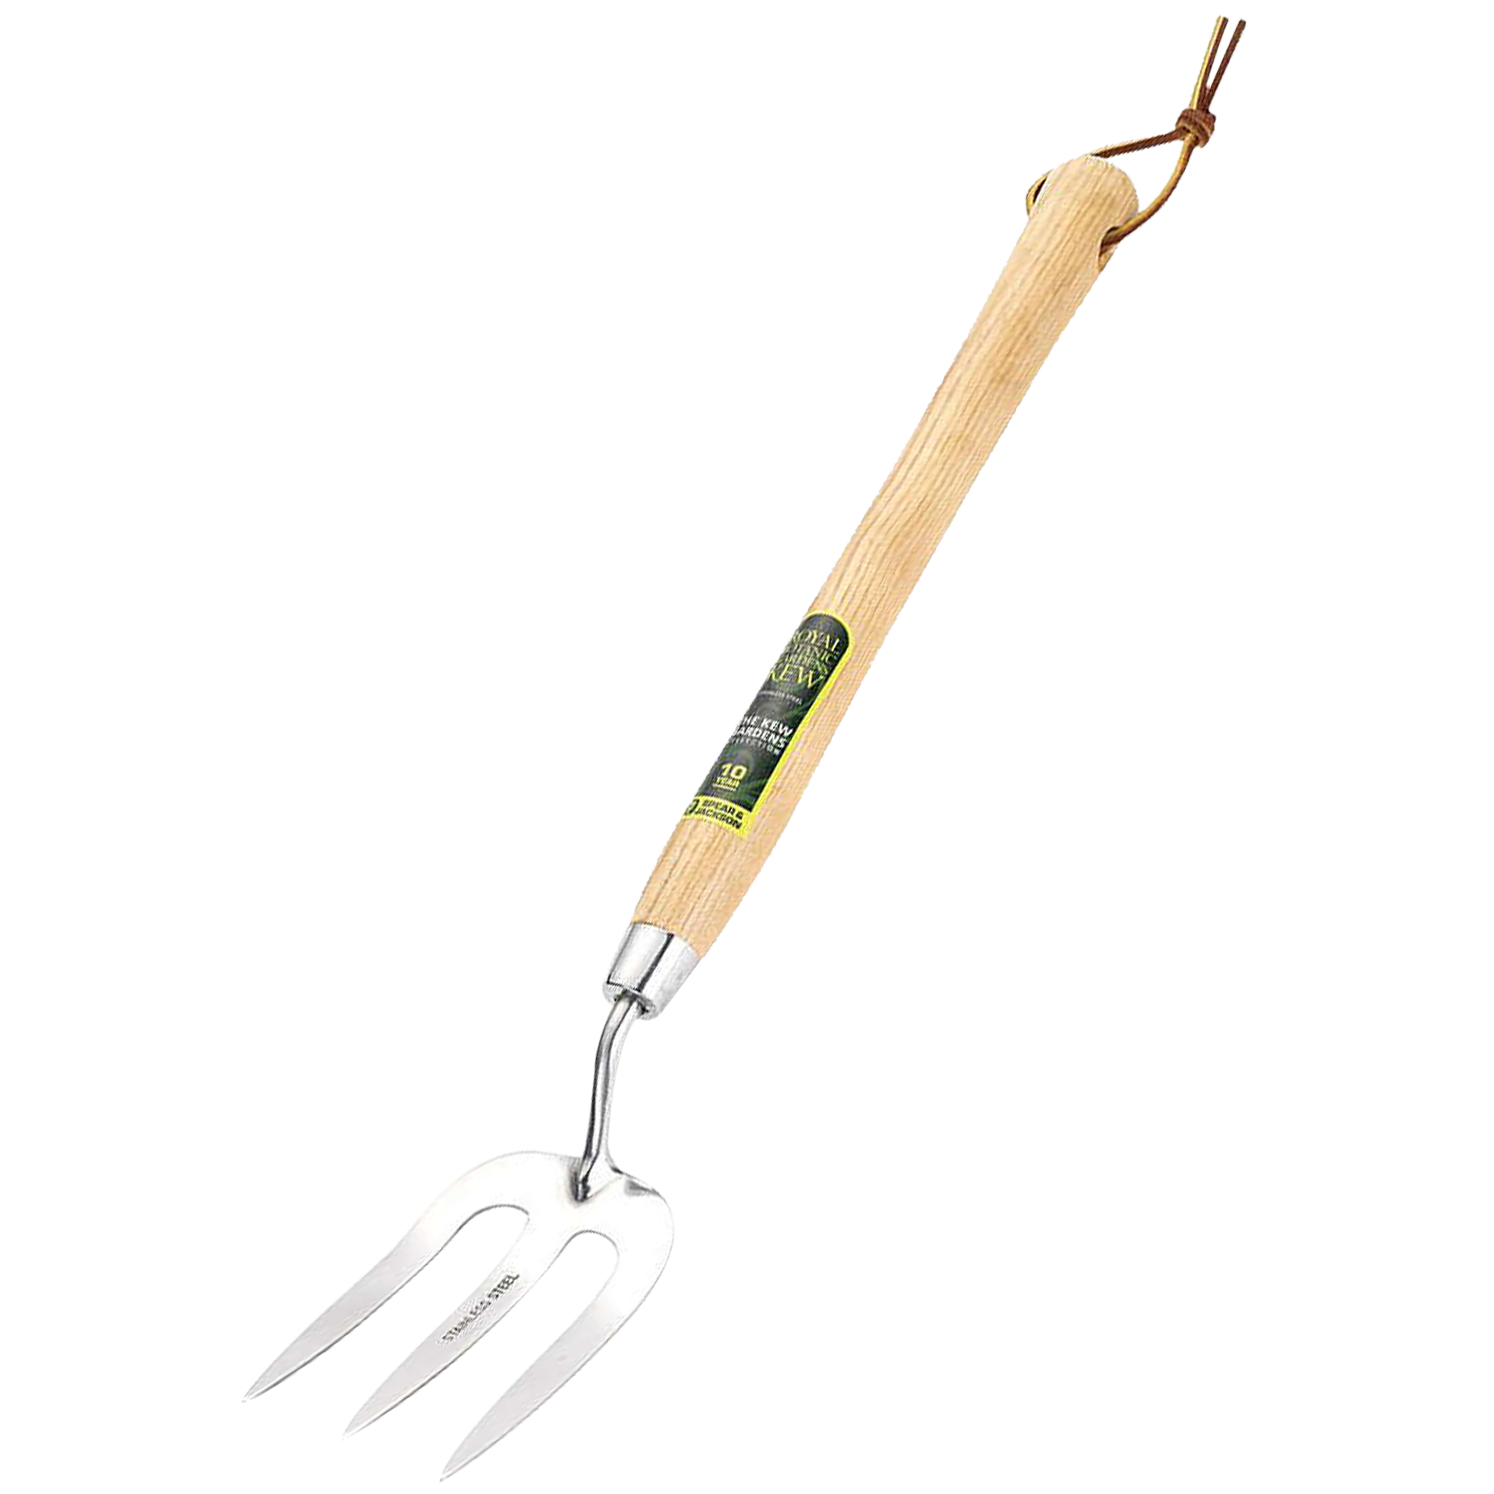 Garden fork